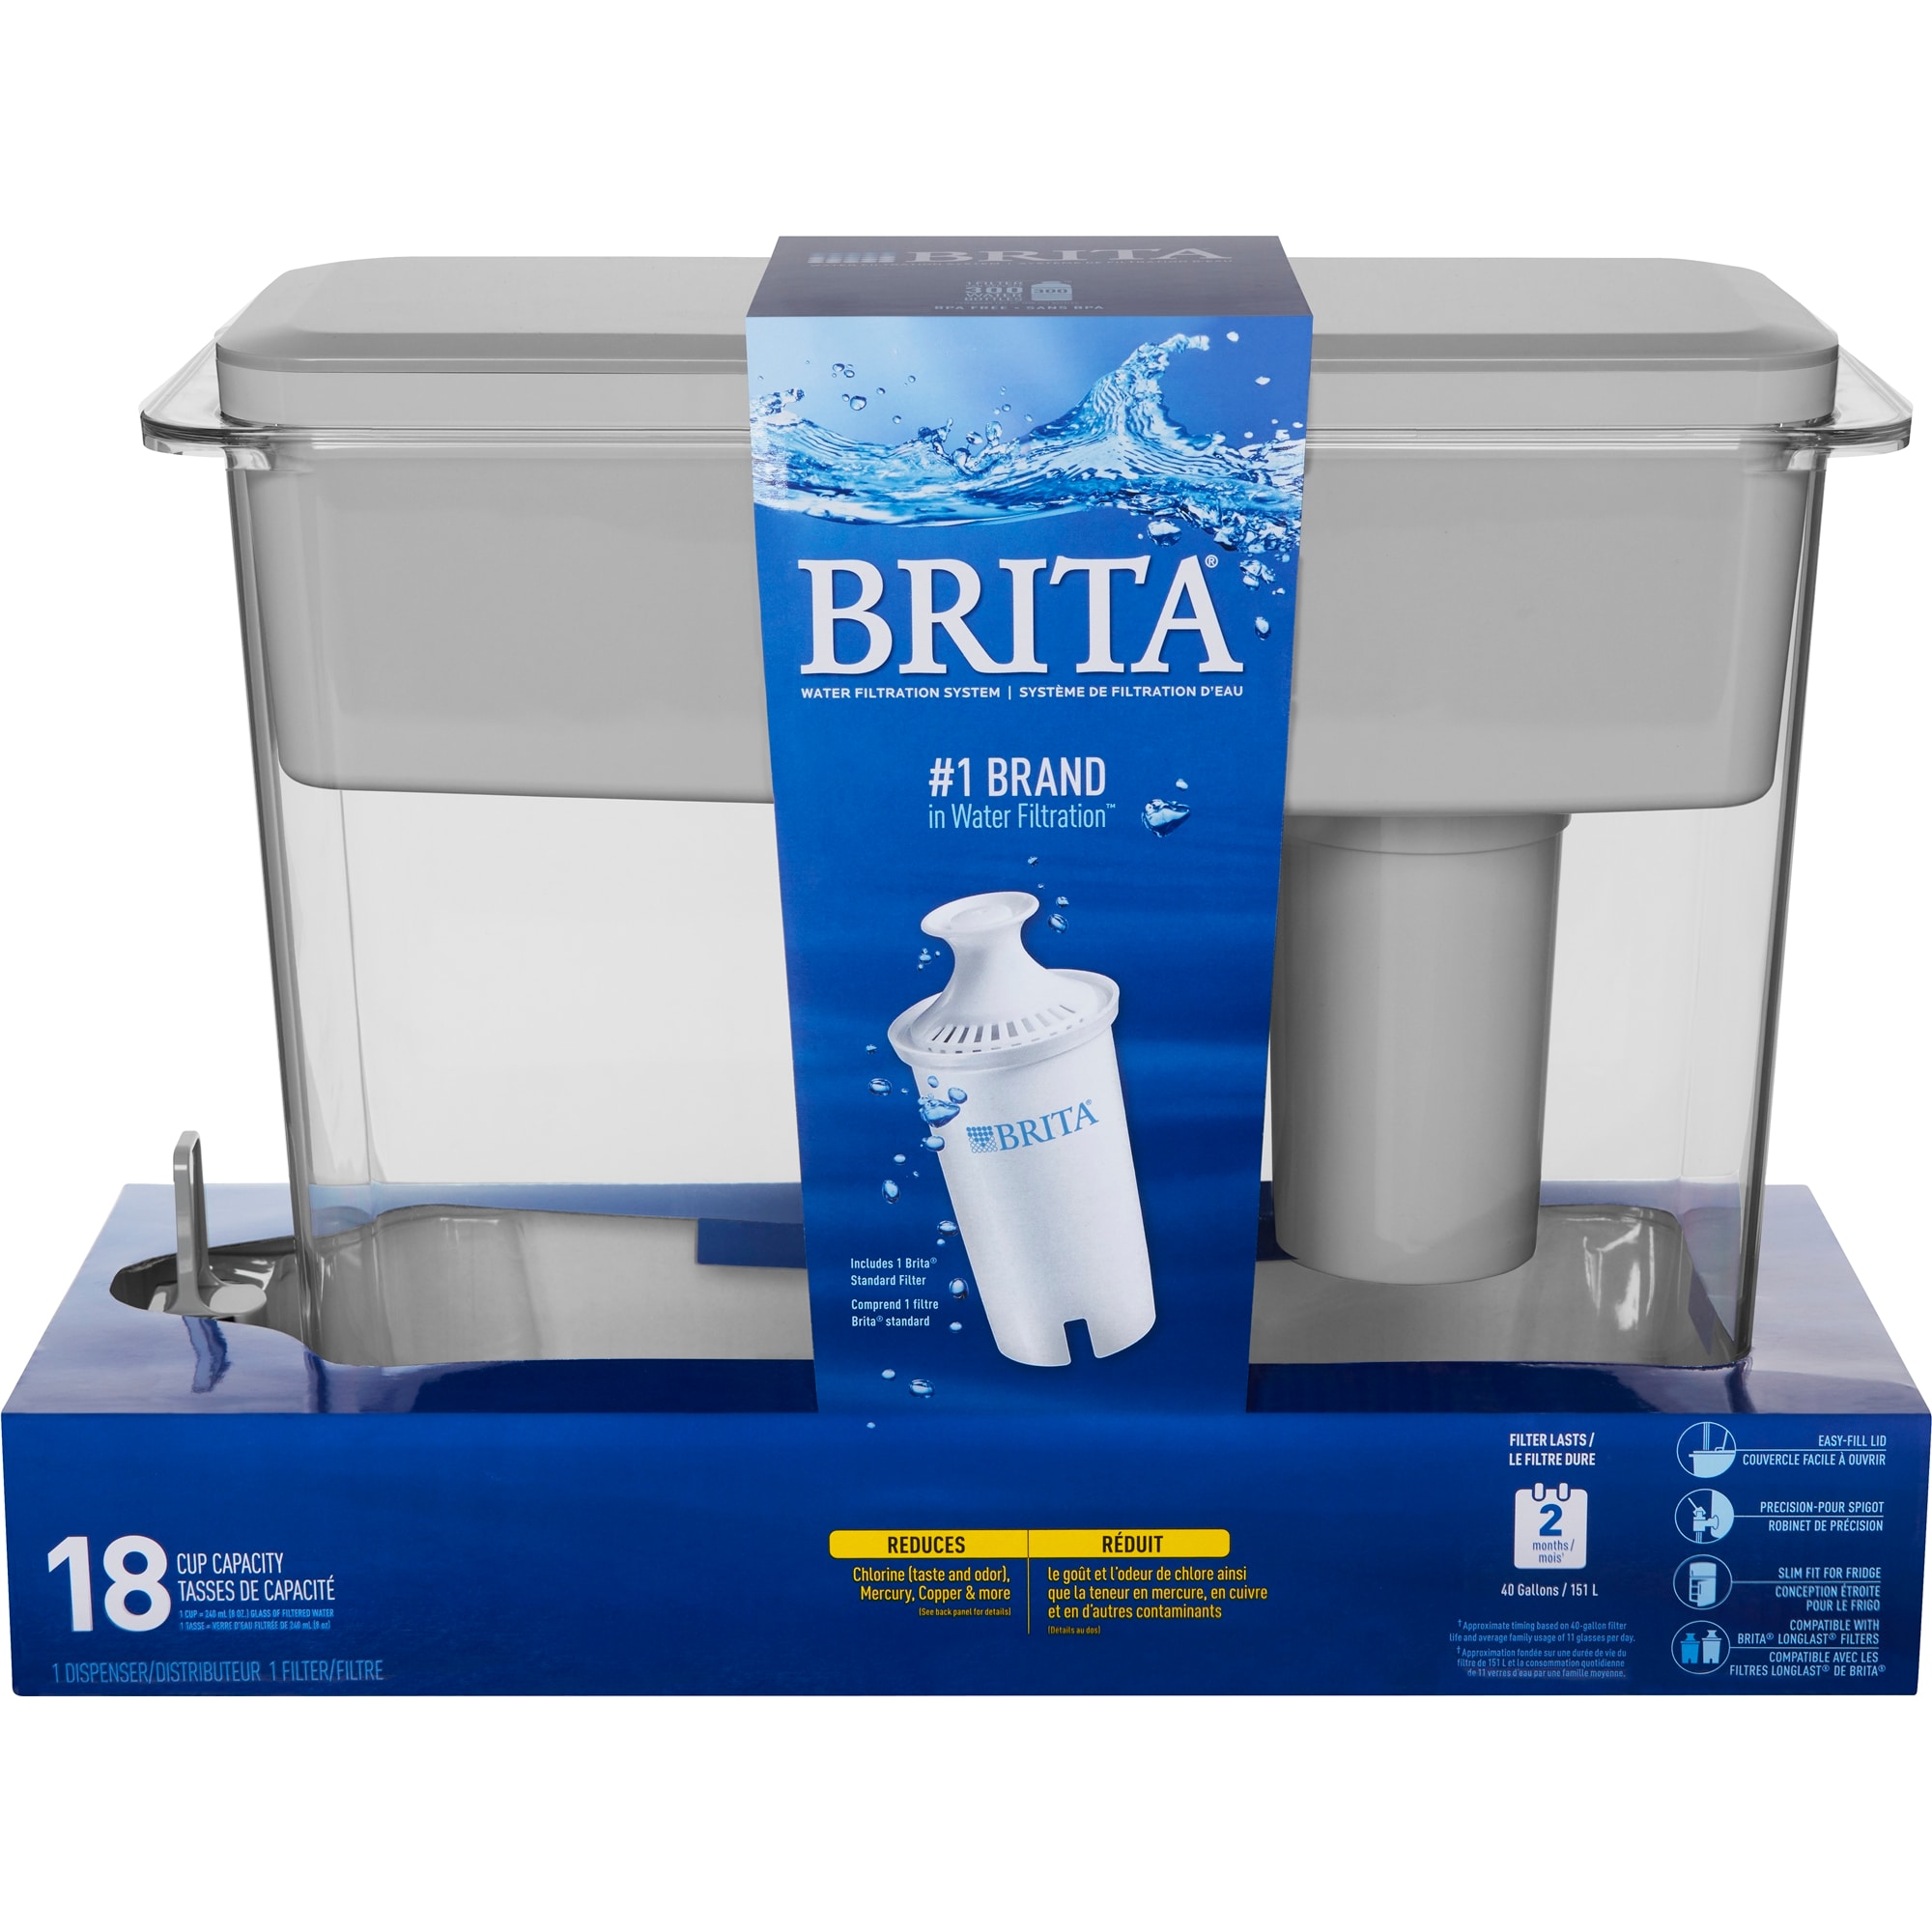 Brita water pitcher